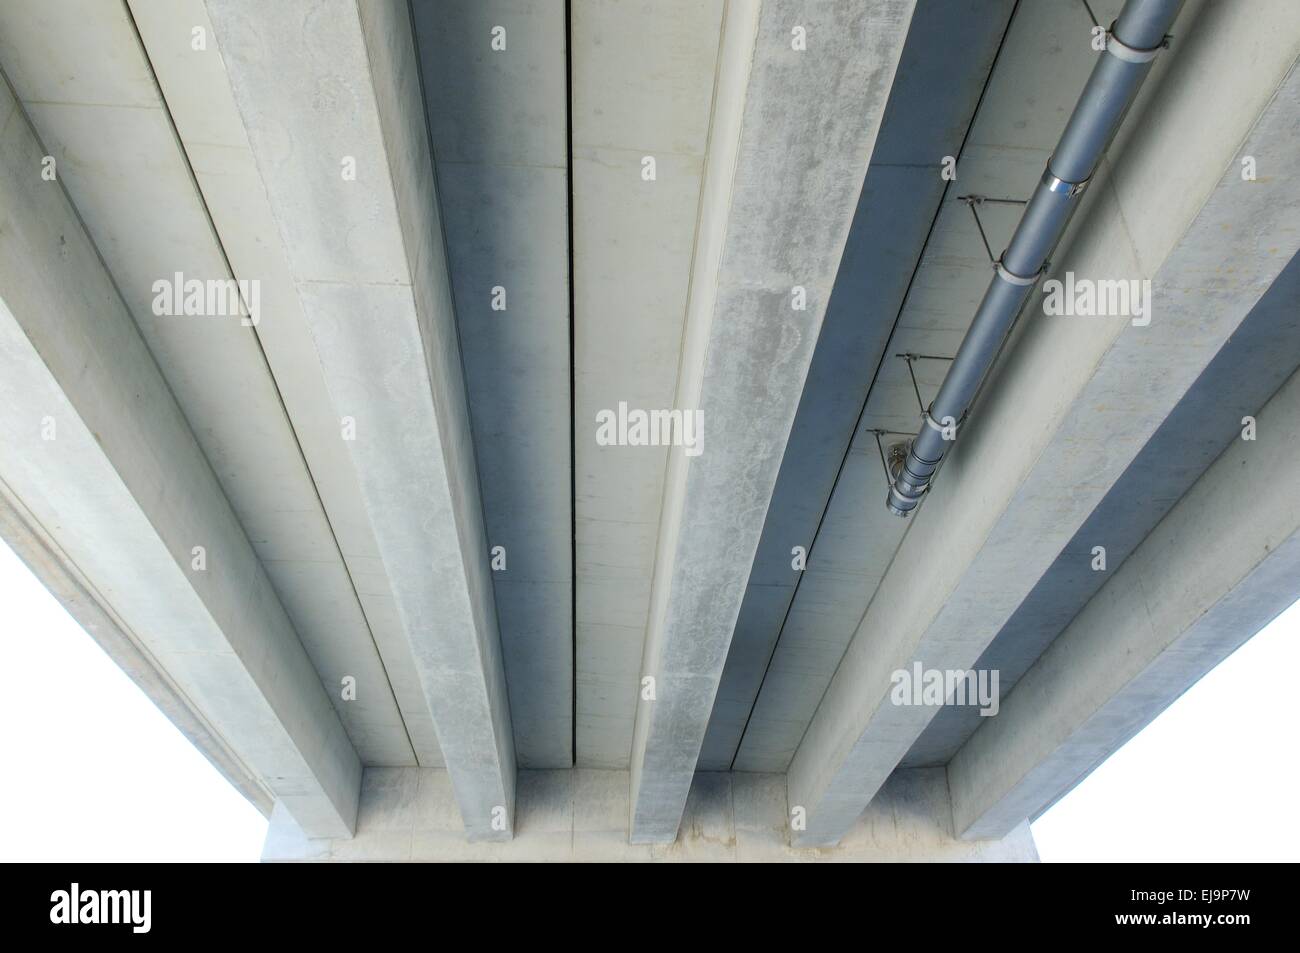 Concrete bridge-underside Stock Photo